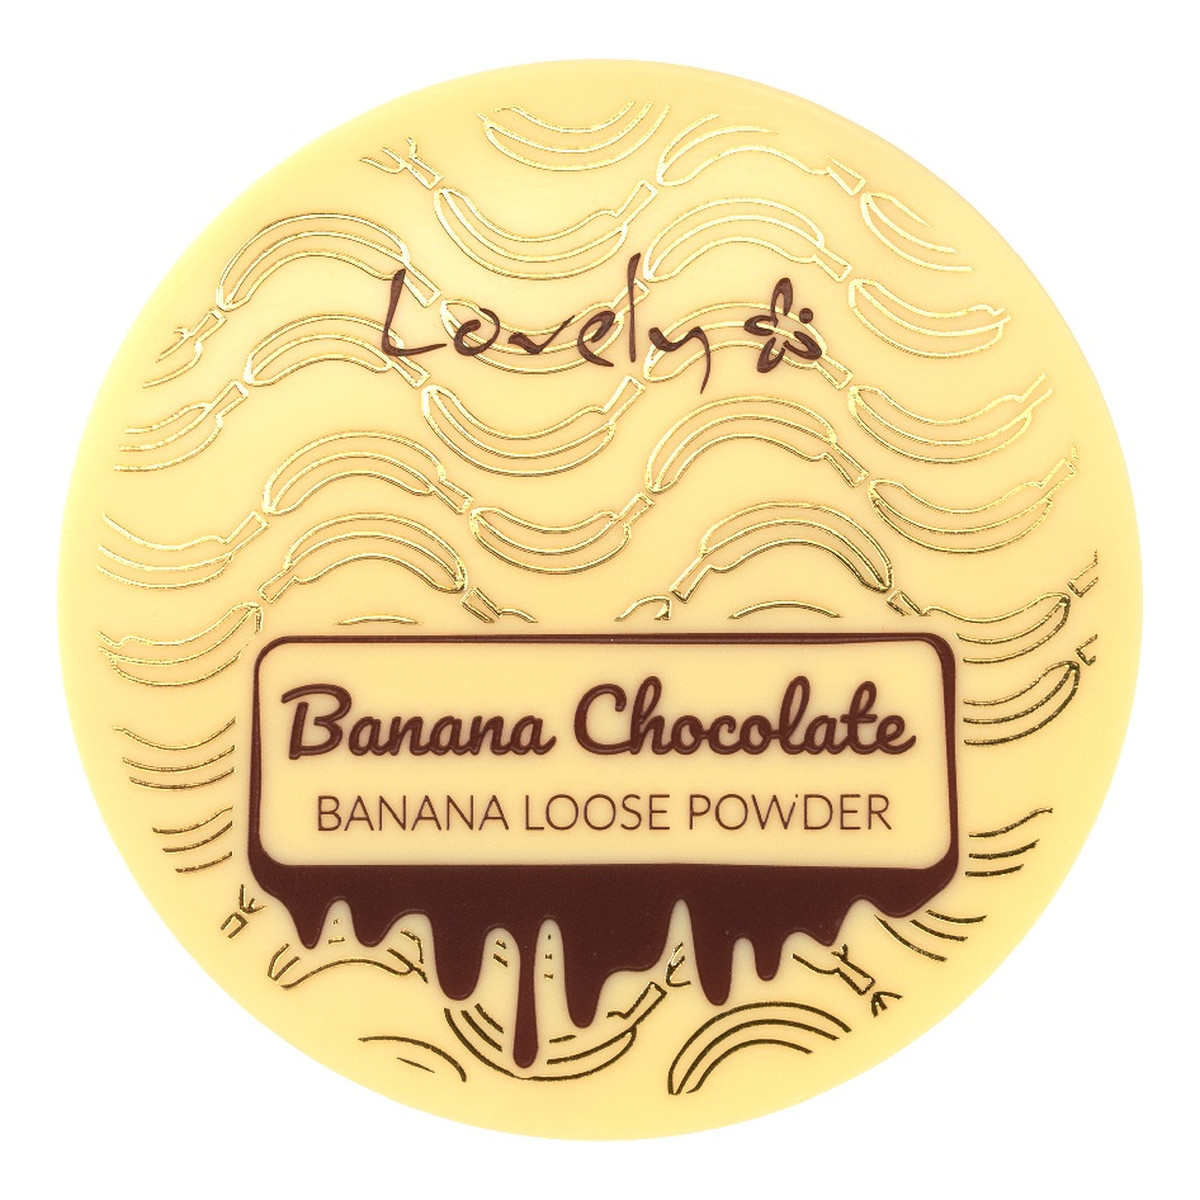 Lovely Banana Chocolate Loose Powder Bananowo-czekoladowy puder sypki do twarzy 8g